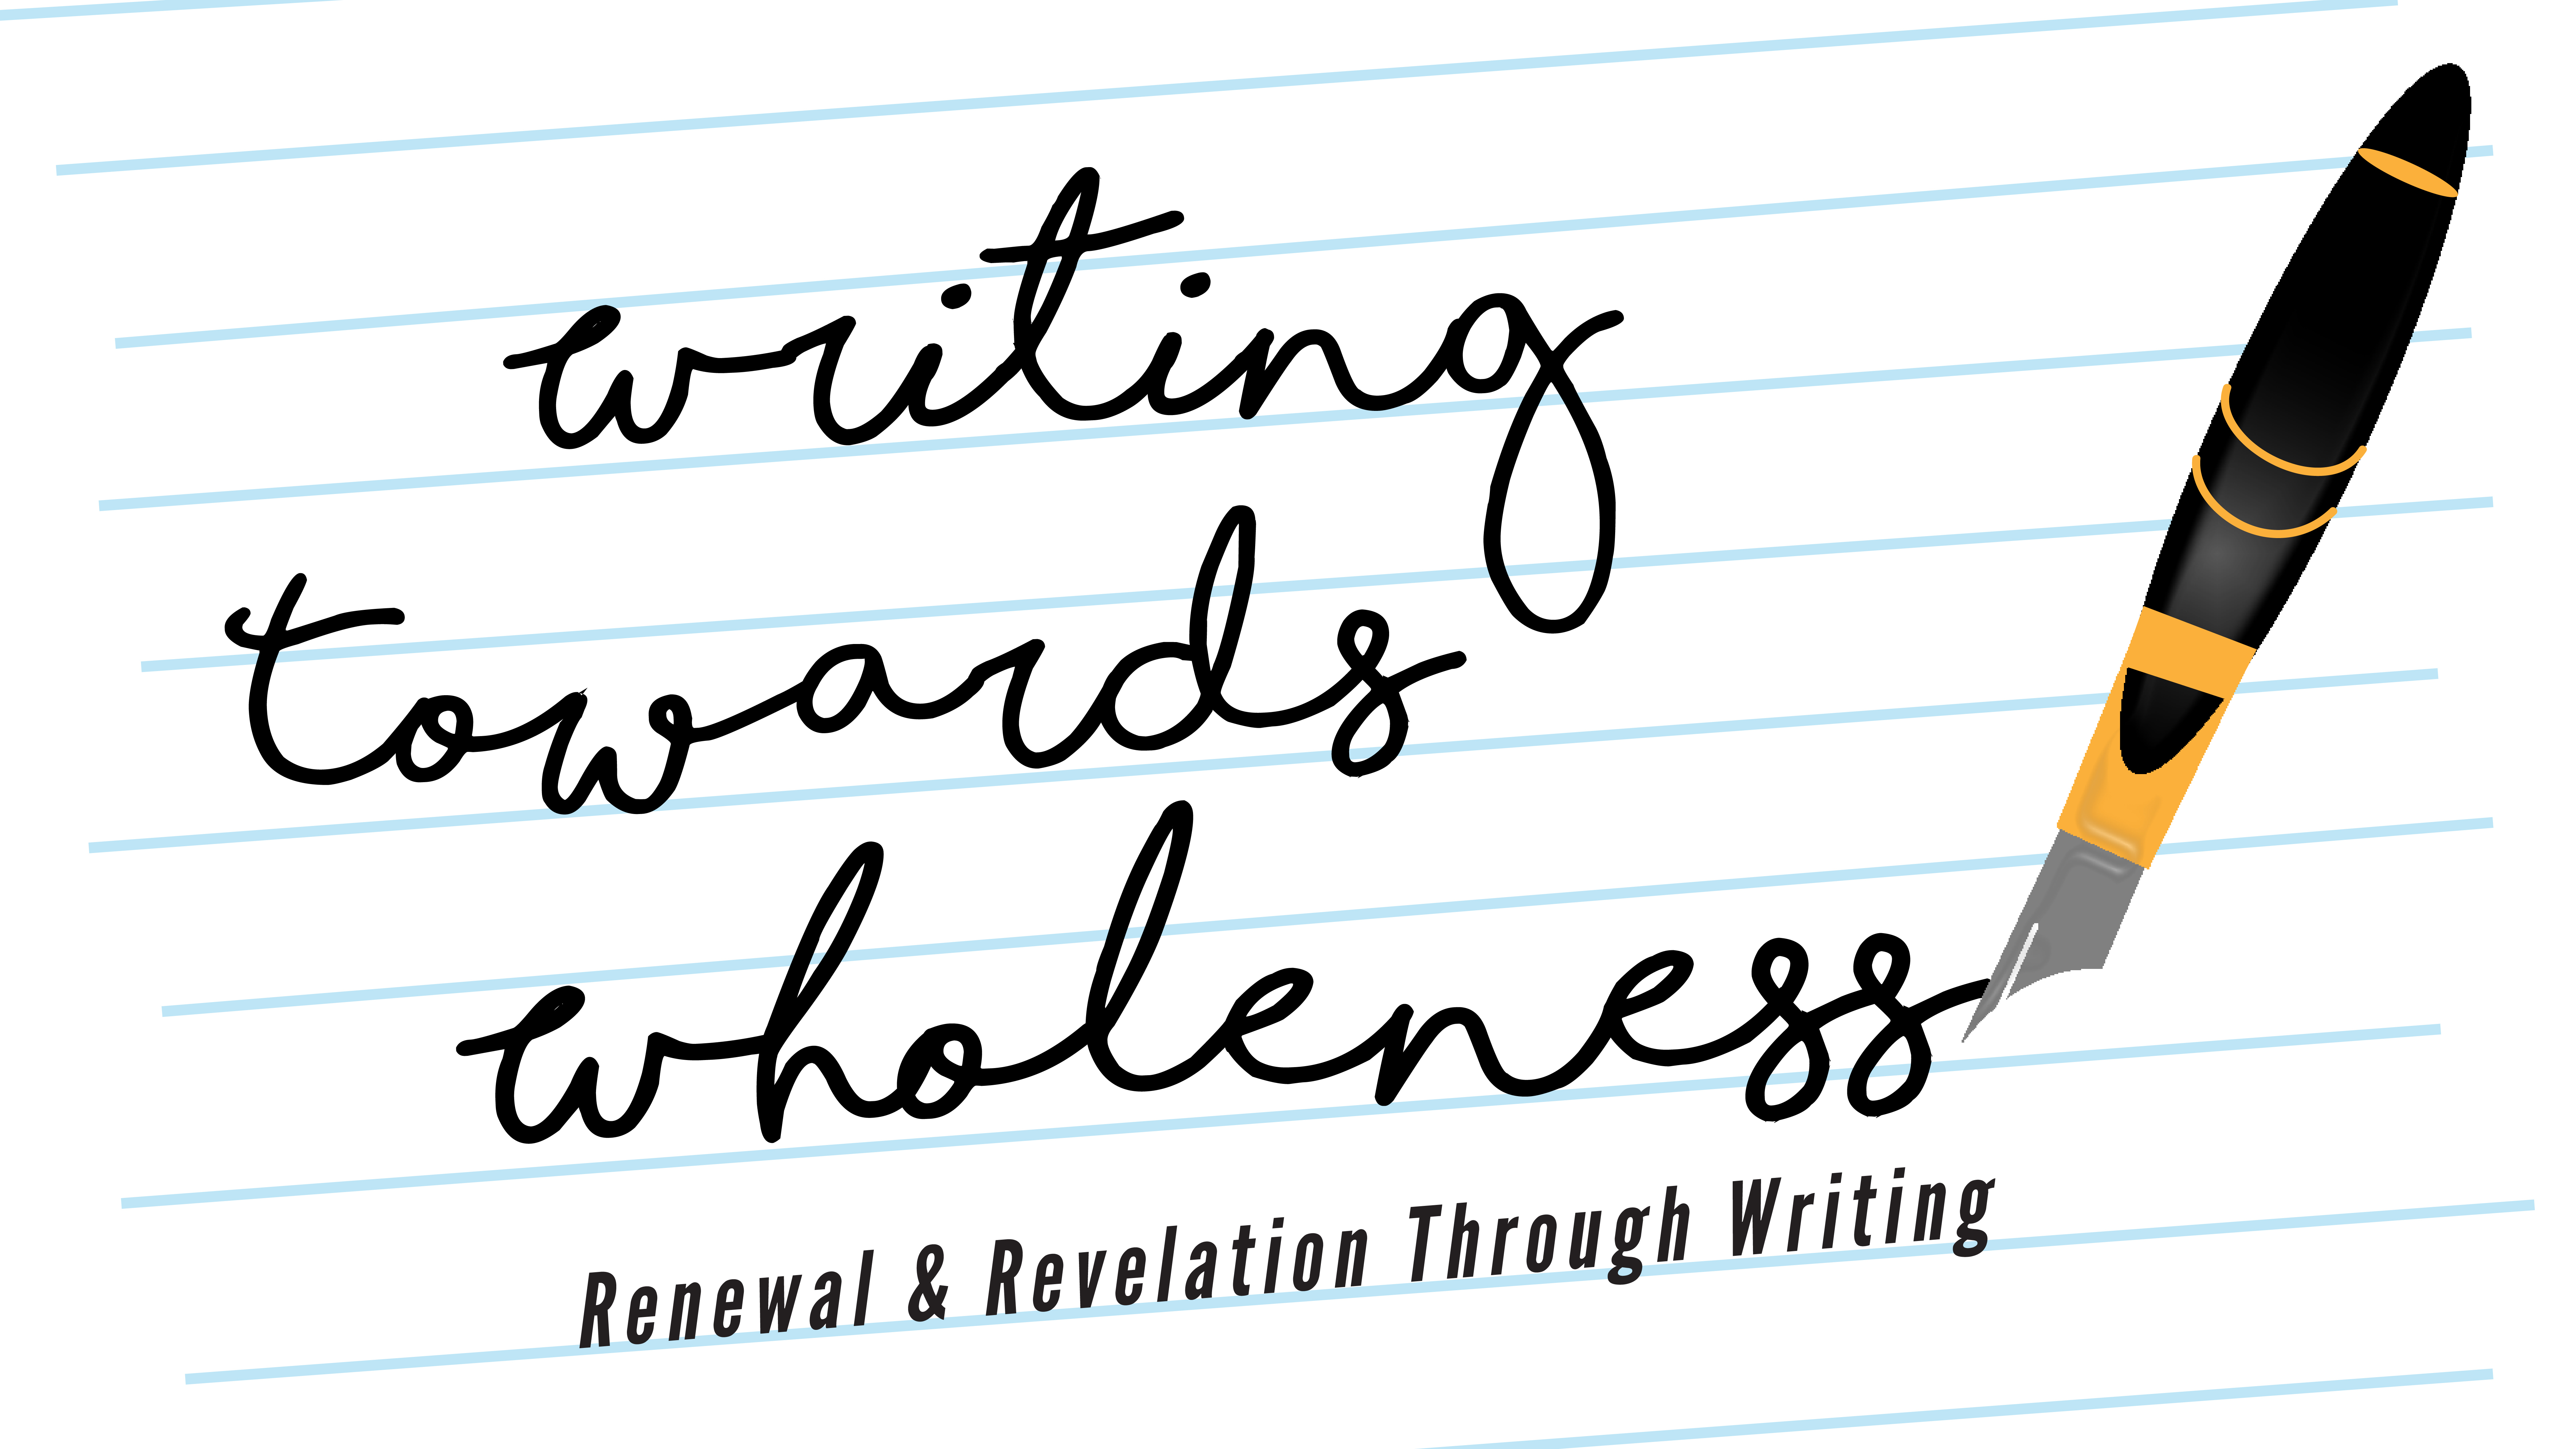 Writing Towards Wholeness - Renewal & Revelation Through Writing